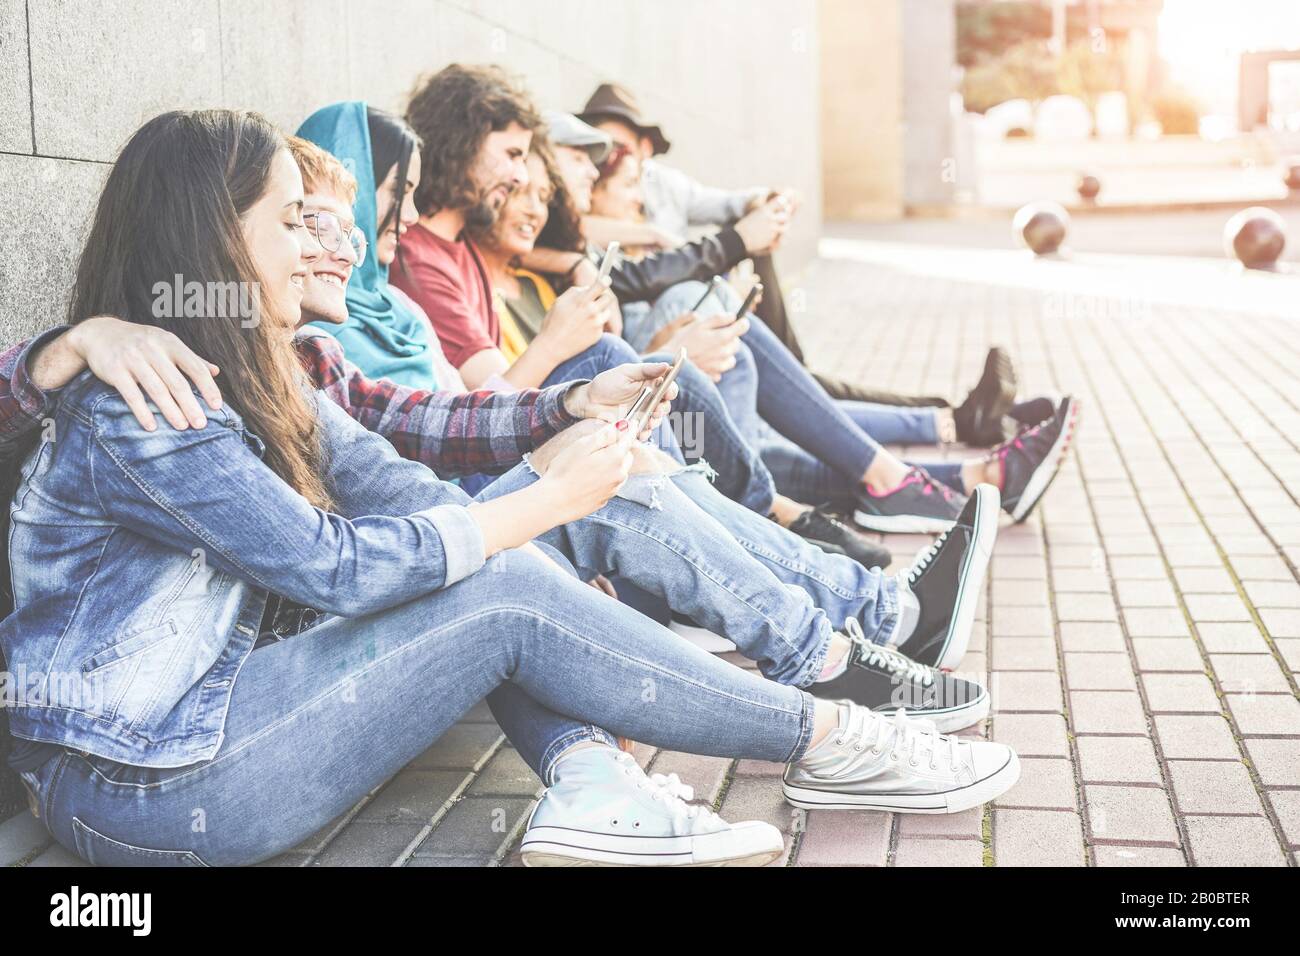 Tausendjährige Freunde, die im Freien sitzende Smartphones nutzen - Vielfältige Kultur Menschen sind auf neue Technologietrends eingestellt - Konzept der Jugend, sozialer Lebensstil Stockfoto